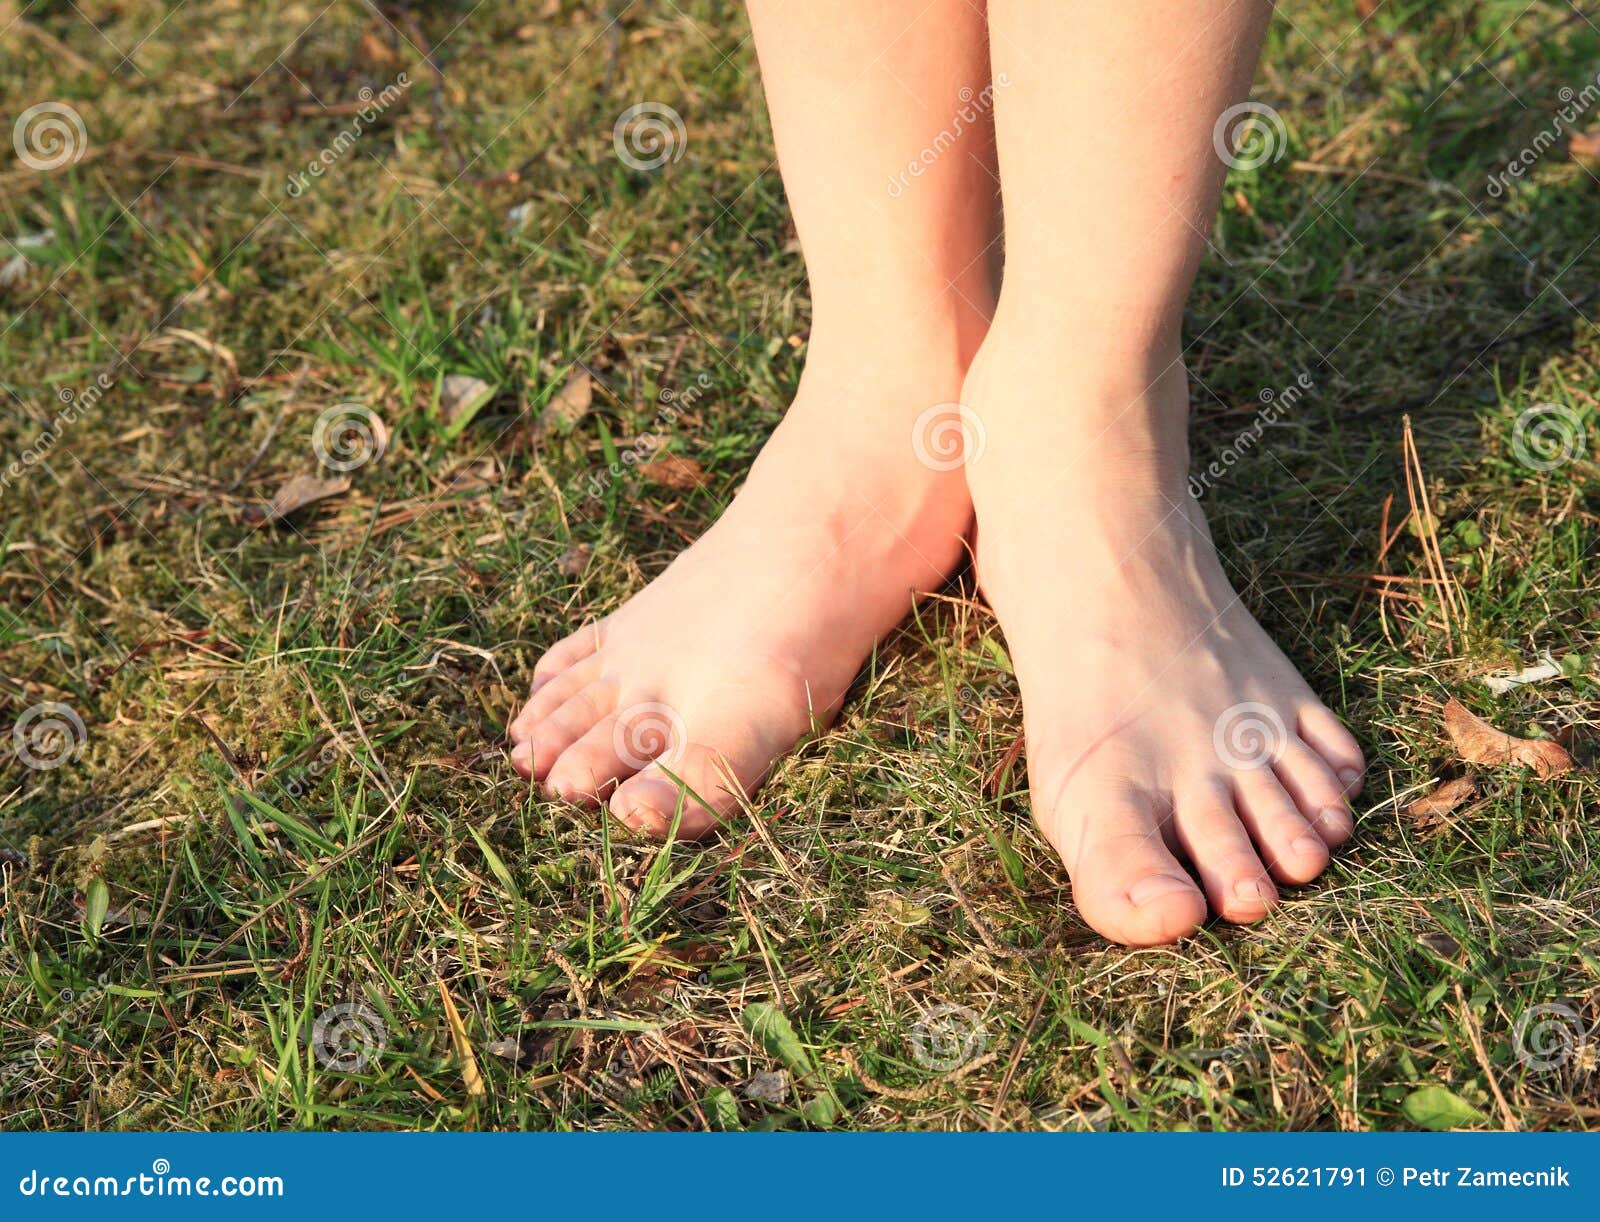 Босые ноги баста jakone. Босые маленькие ножки. Ноги босиком. Стопы стоят на траве. Ступни стоят.